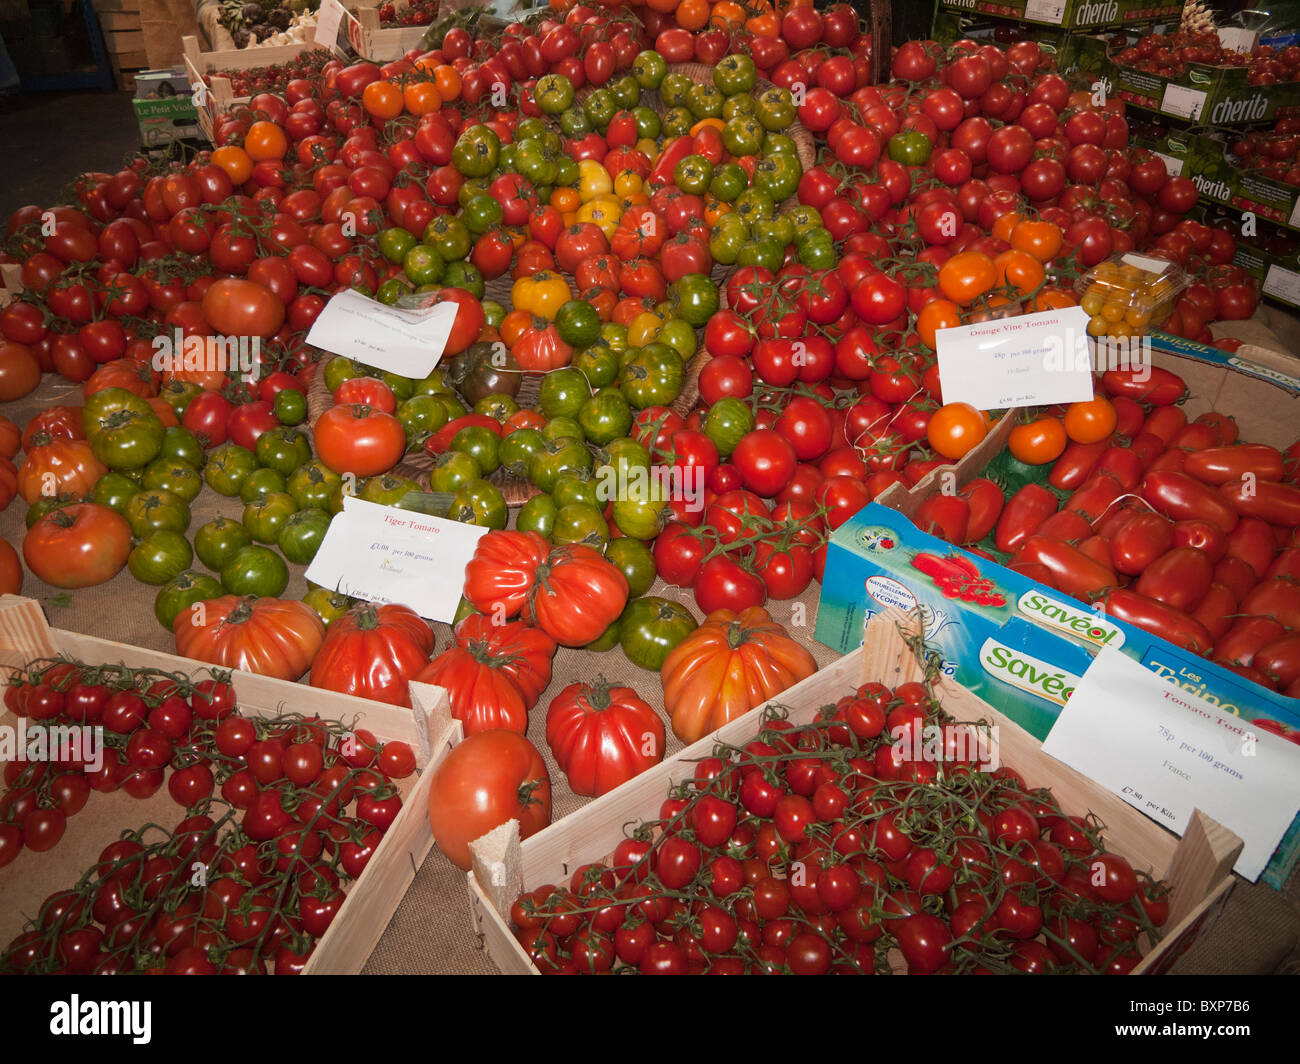 Tomatoes-Borough Market,Southwark,London,England Stock Photo